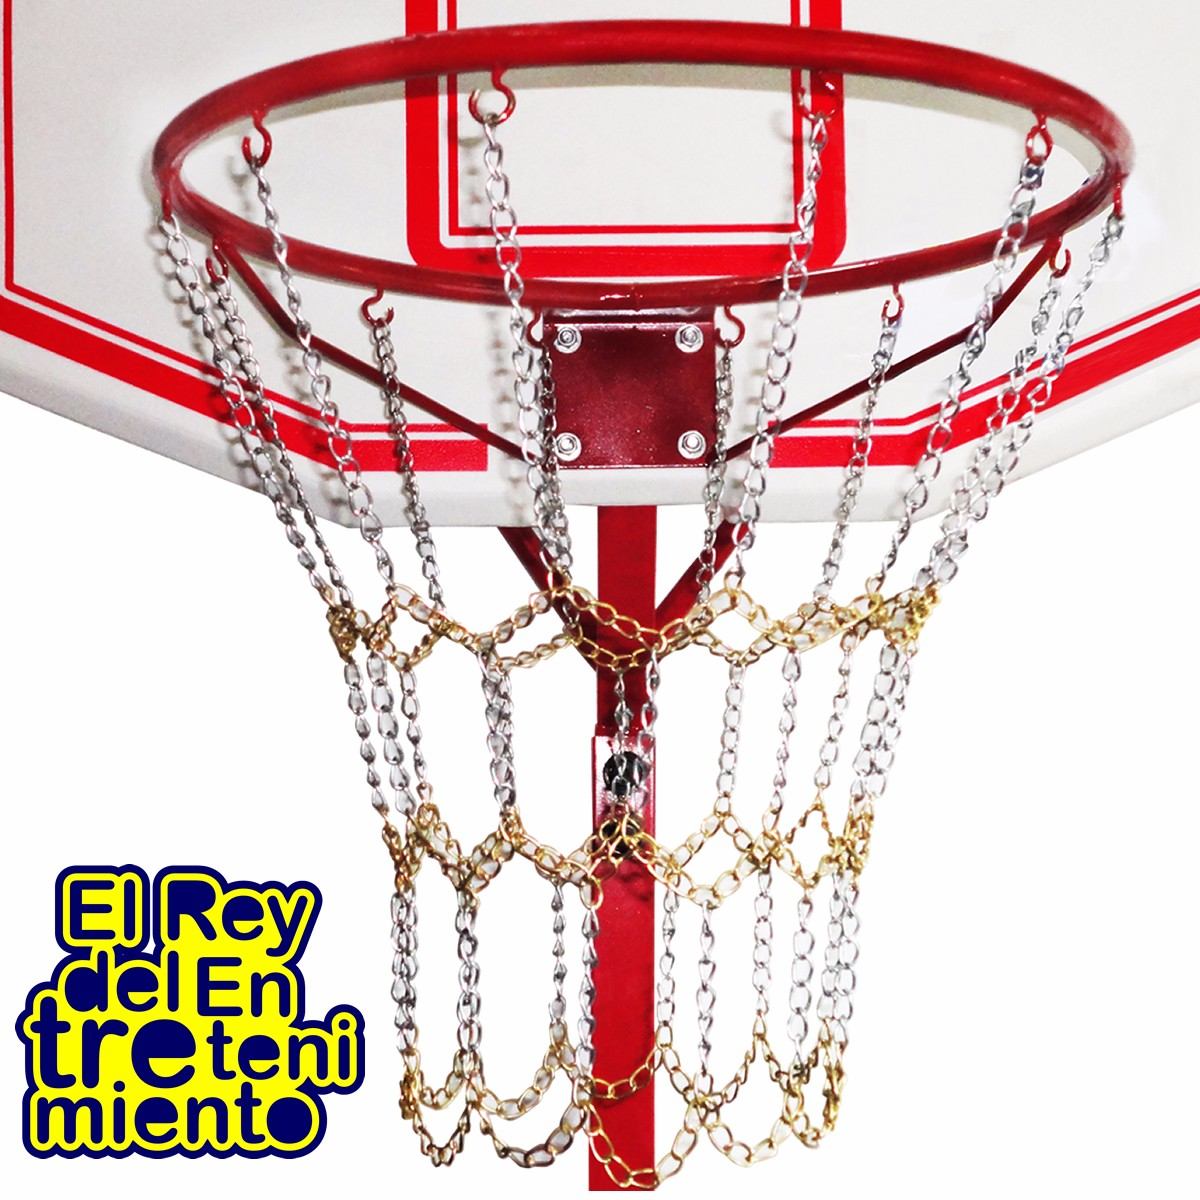 Red Cadena Metálica Cromada P/ Aros Basquetbol Basket El Rey - $ 490,00